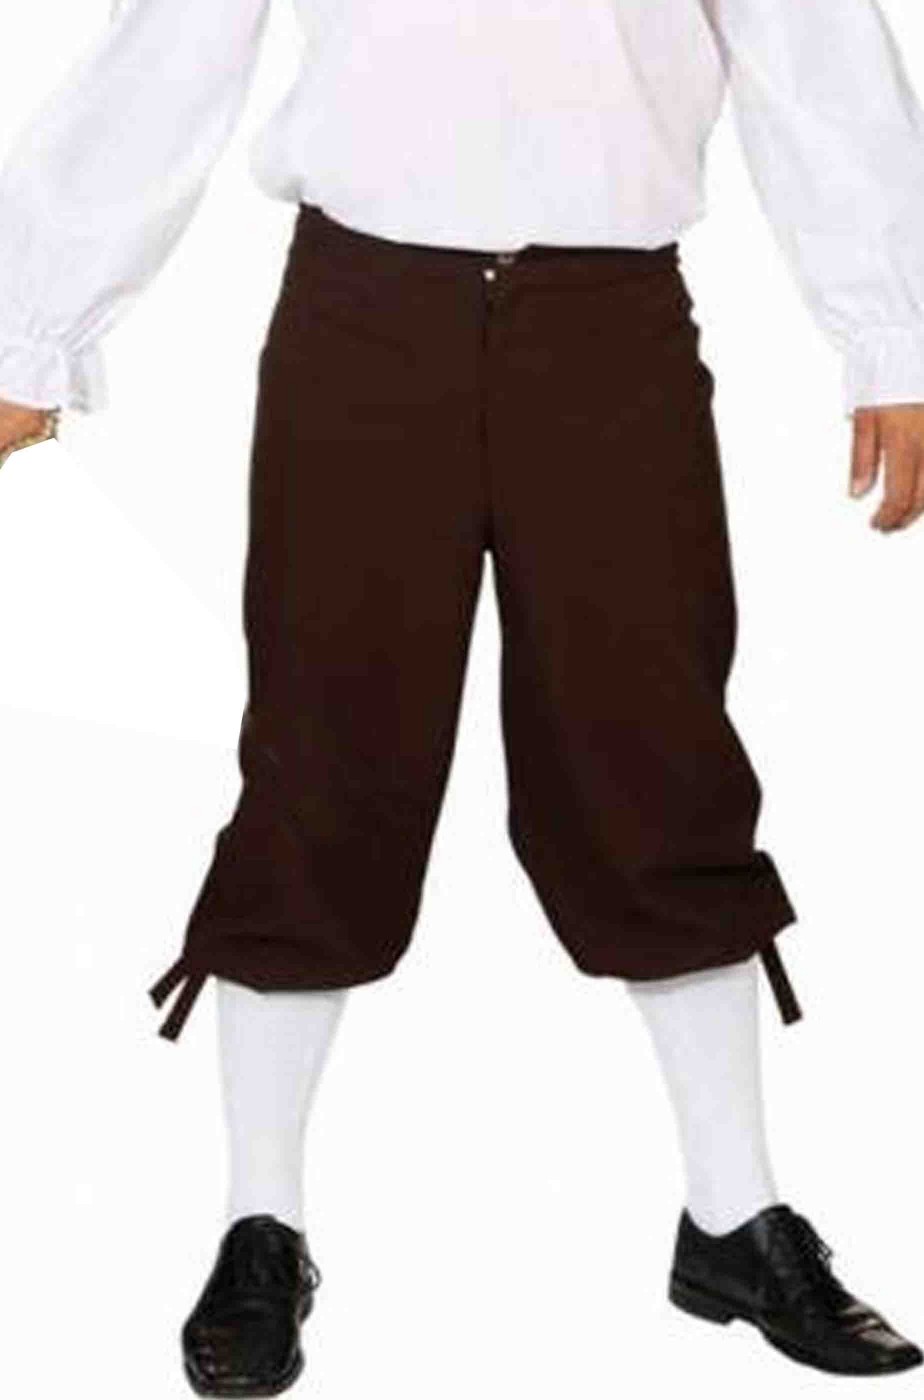 Pantaloni corti neri stile 700 uomo per pirata o barocco rococo